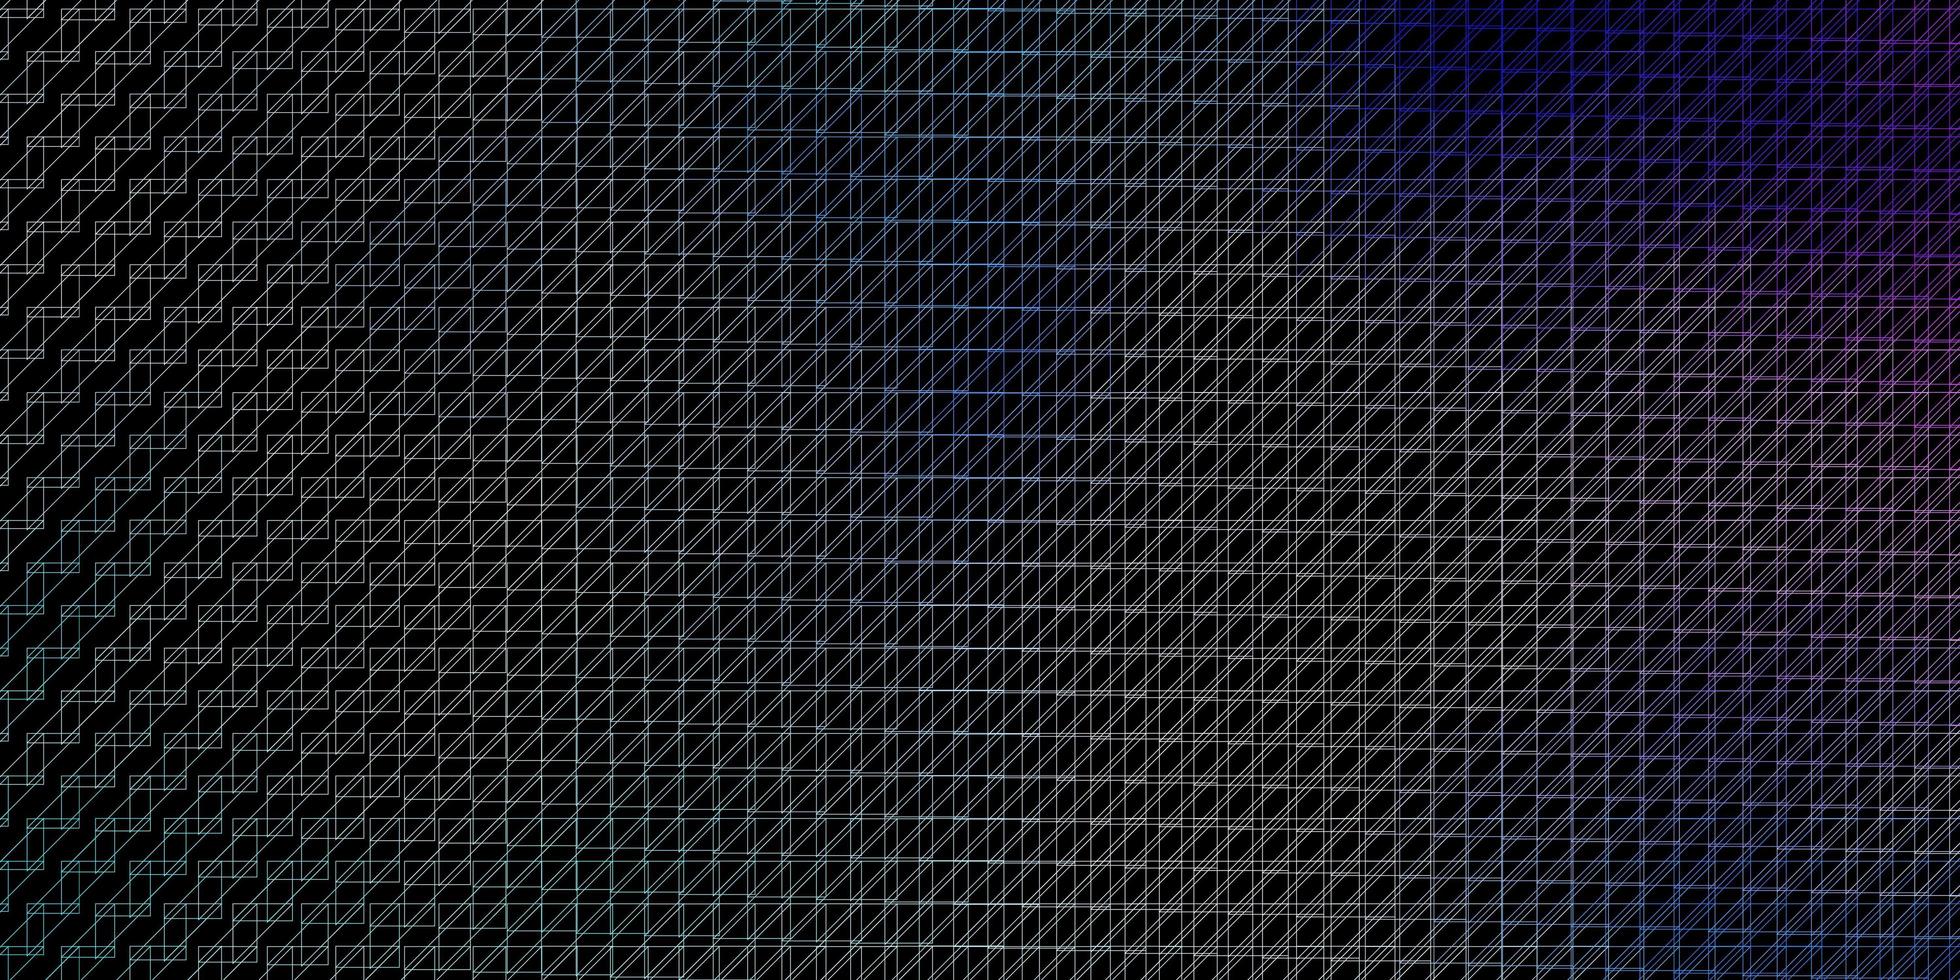 mörkrosa, blå vektormönster med linjer. vektor